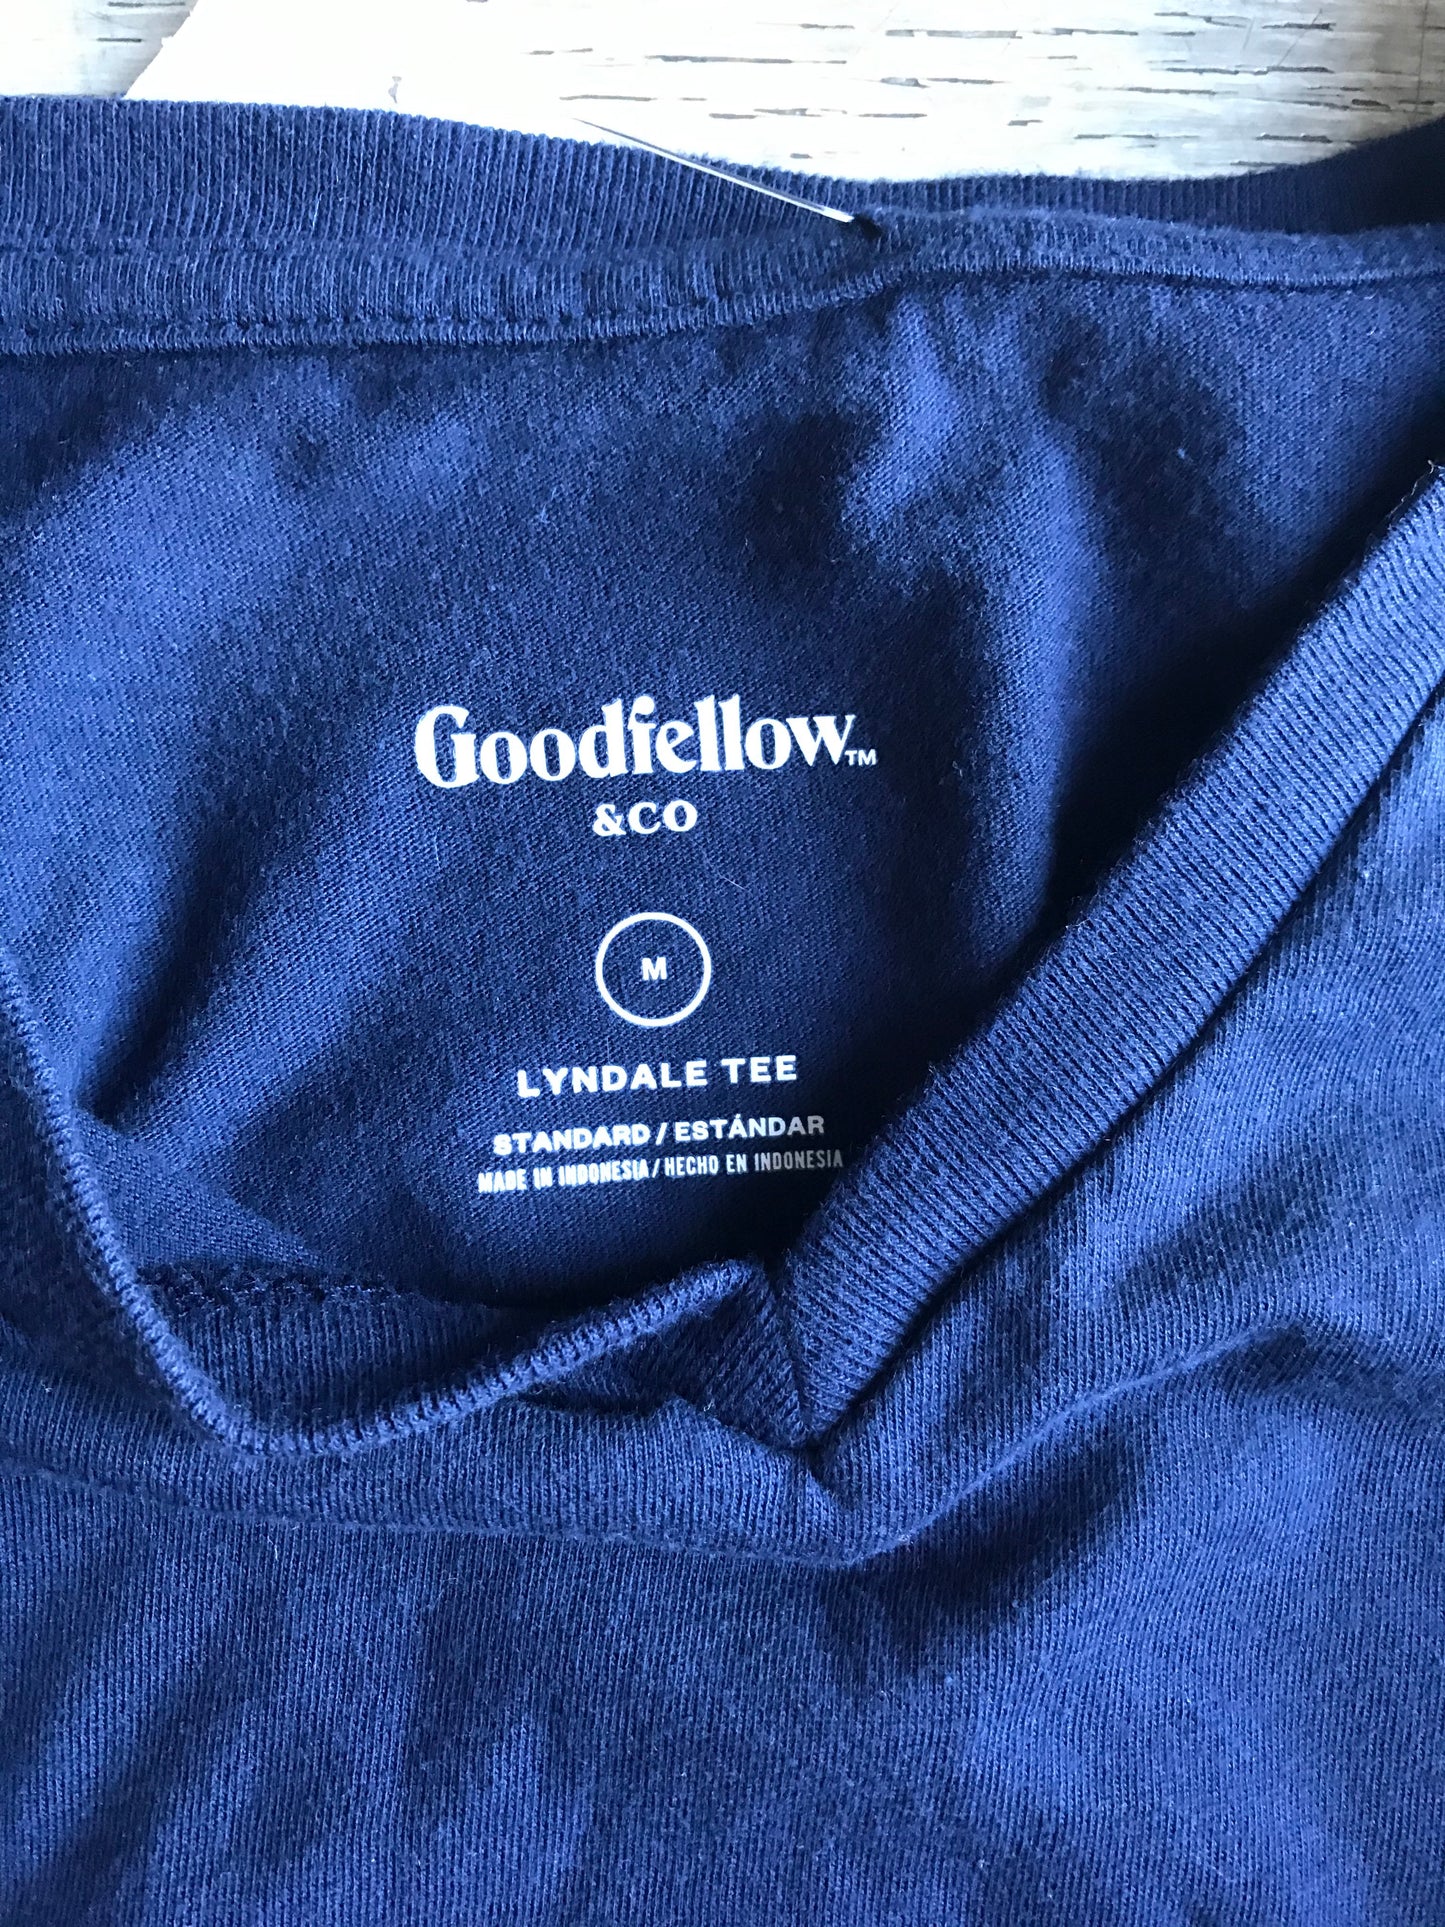 Goodfellow t-shirt